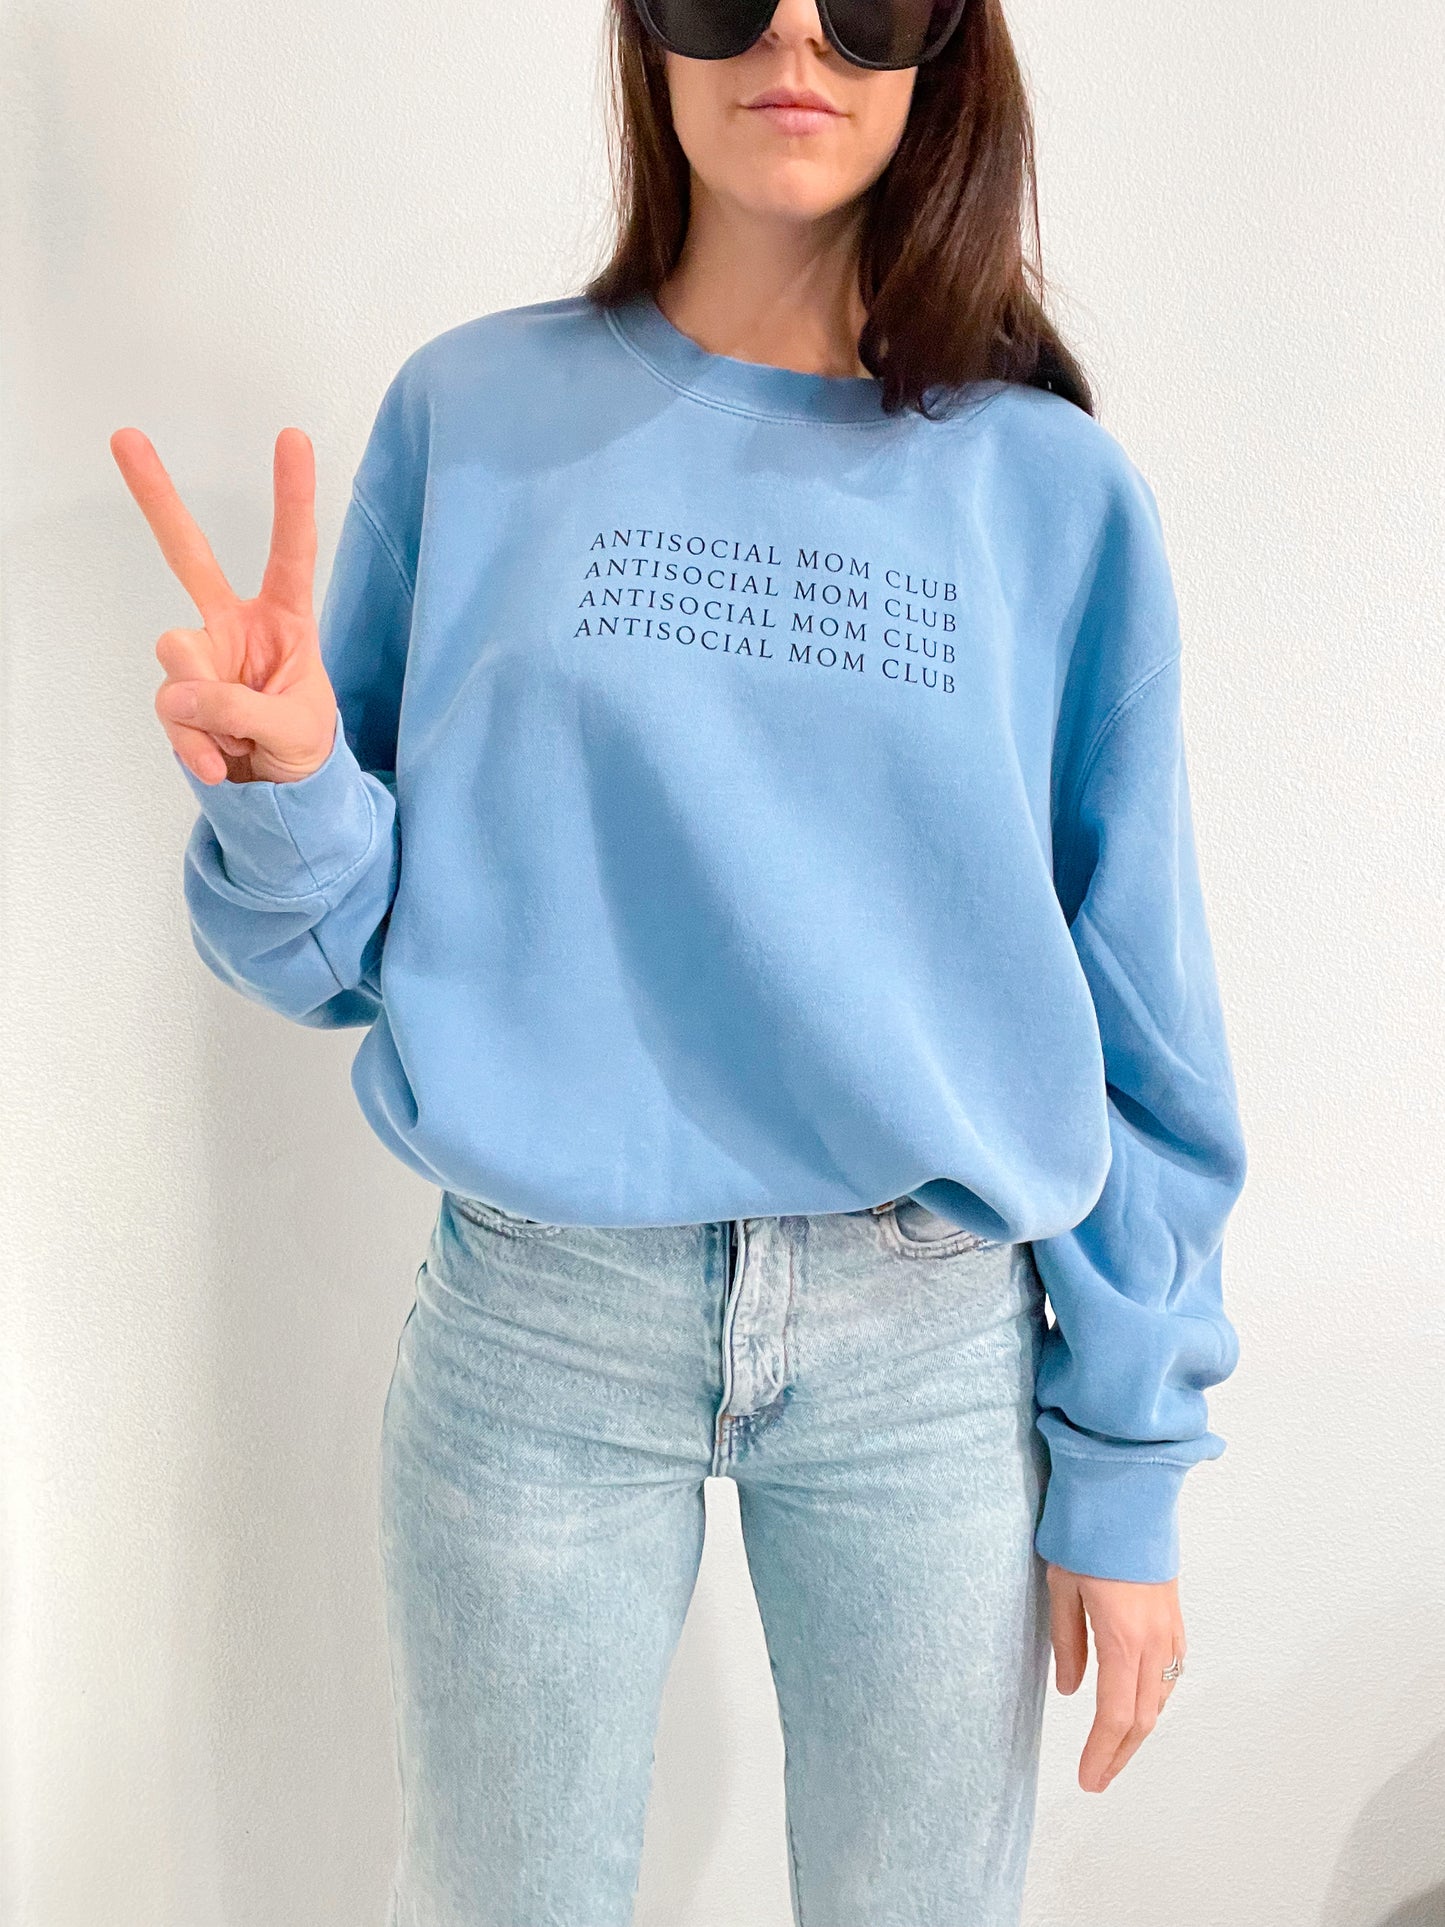 antisocial mom club blue sweatshirt